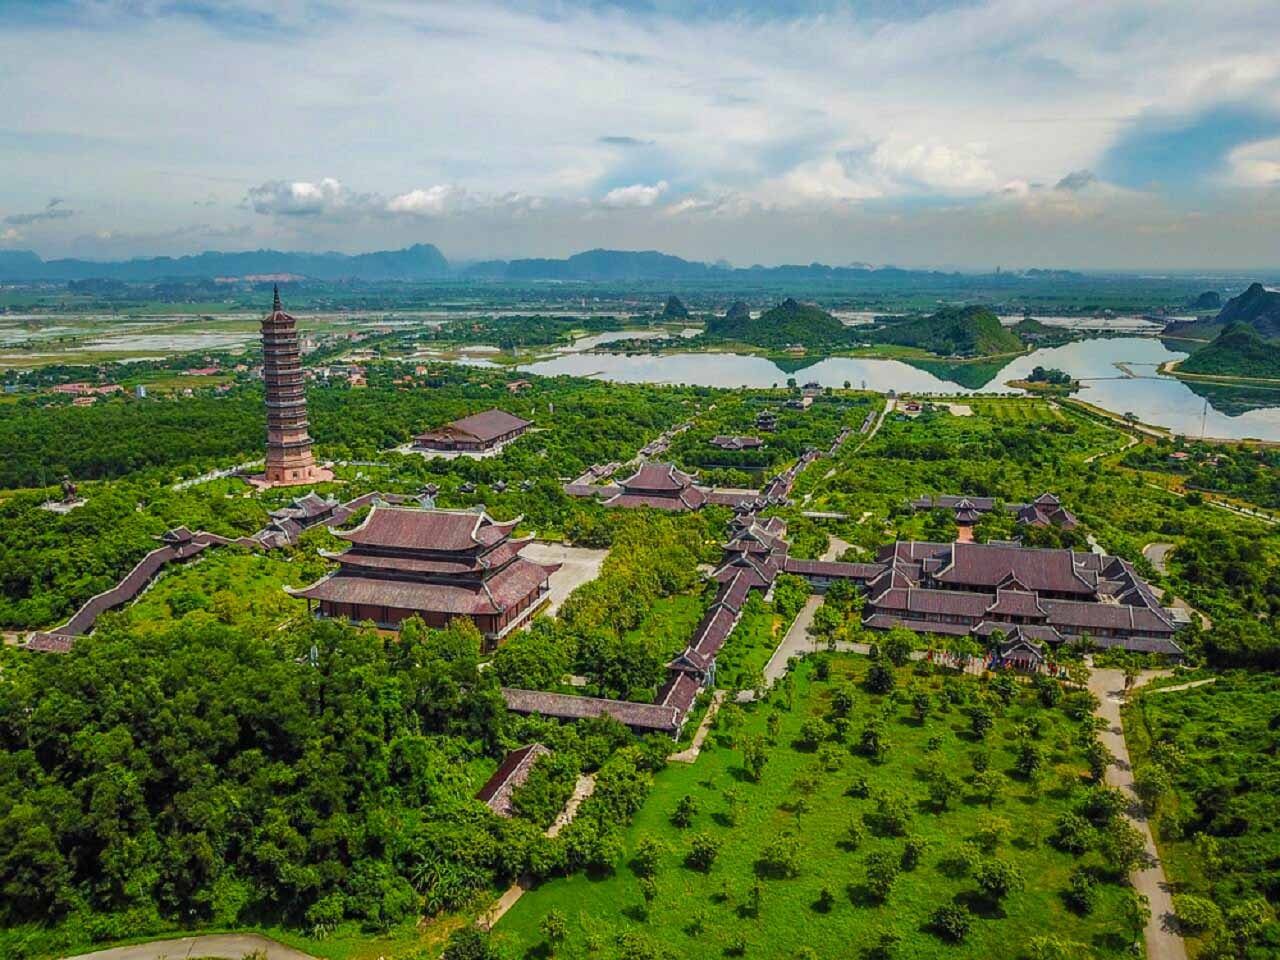 Meilleur moment pour visiter le complexe de la pagode de Bai Dinh